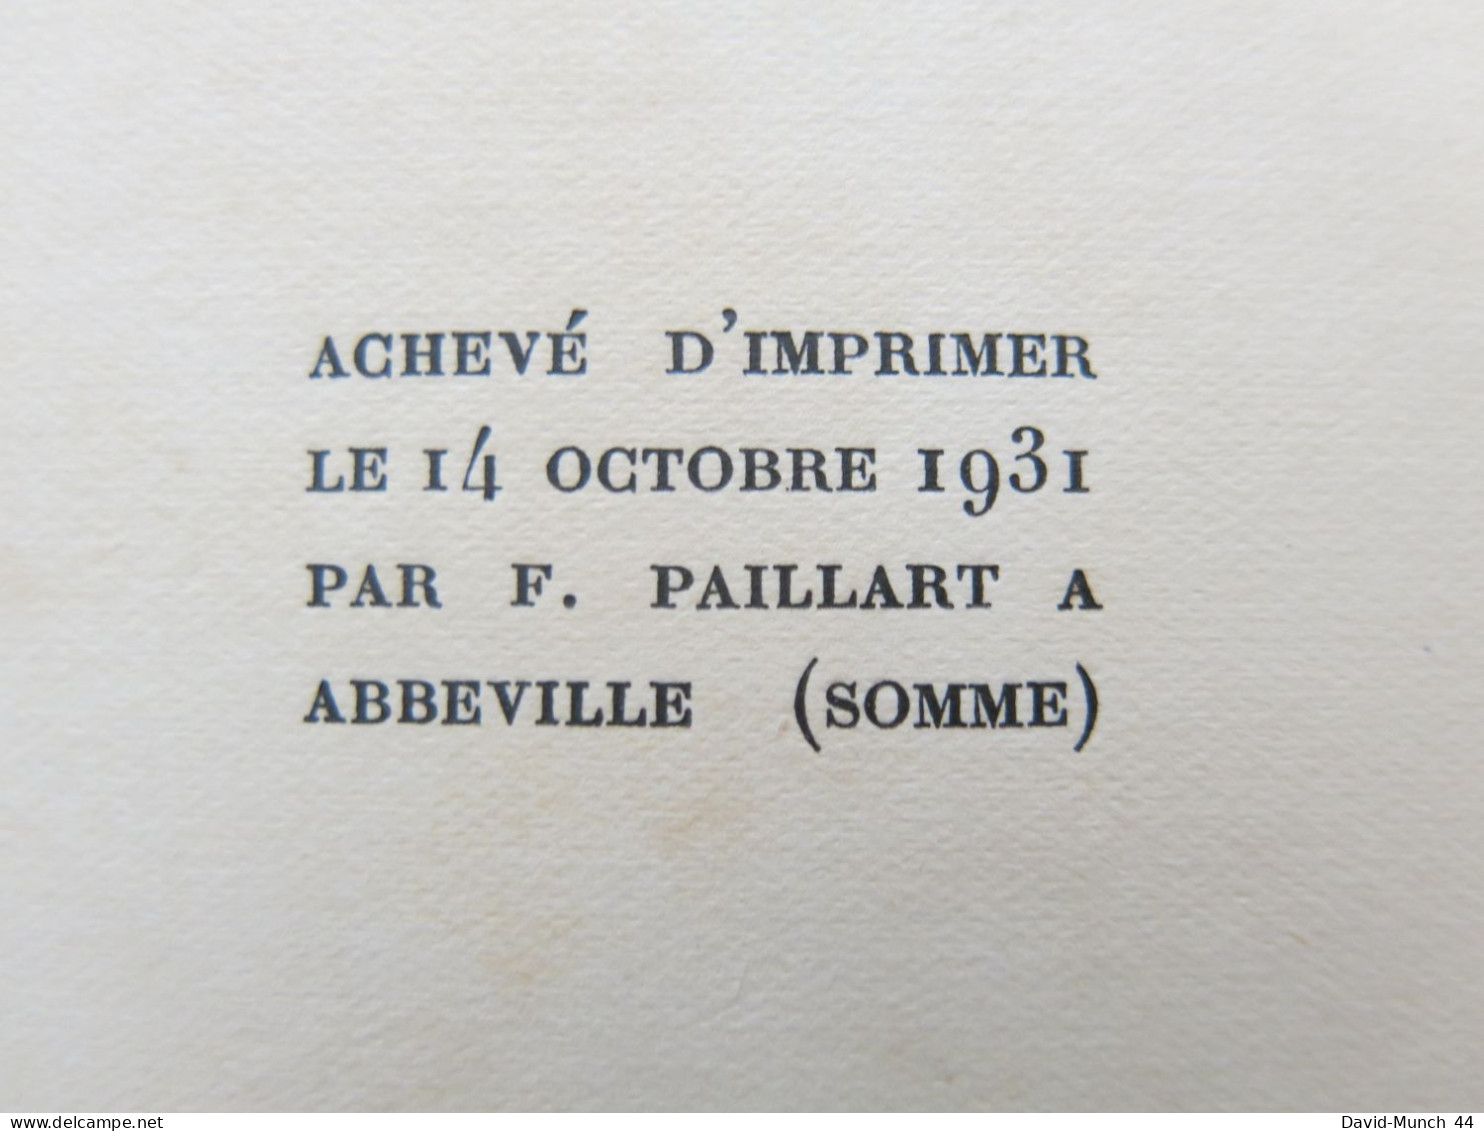 Claire de Jacques Chardonne. Bernard Grasset, "Pour mon plaisir"-V. 1931, exemplaire sur Alfax Navarre numéroté